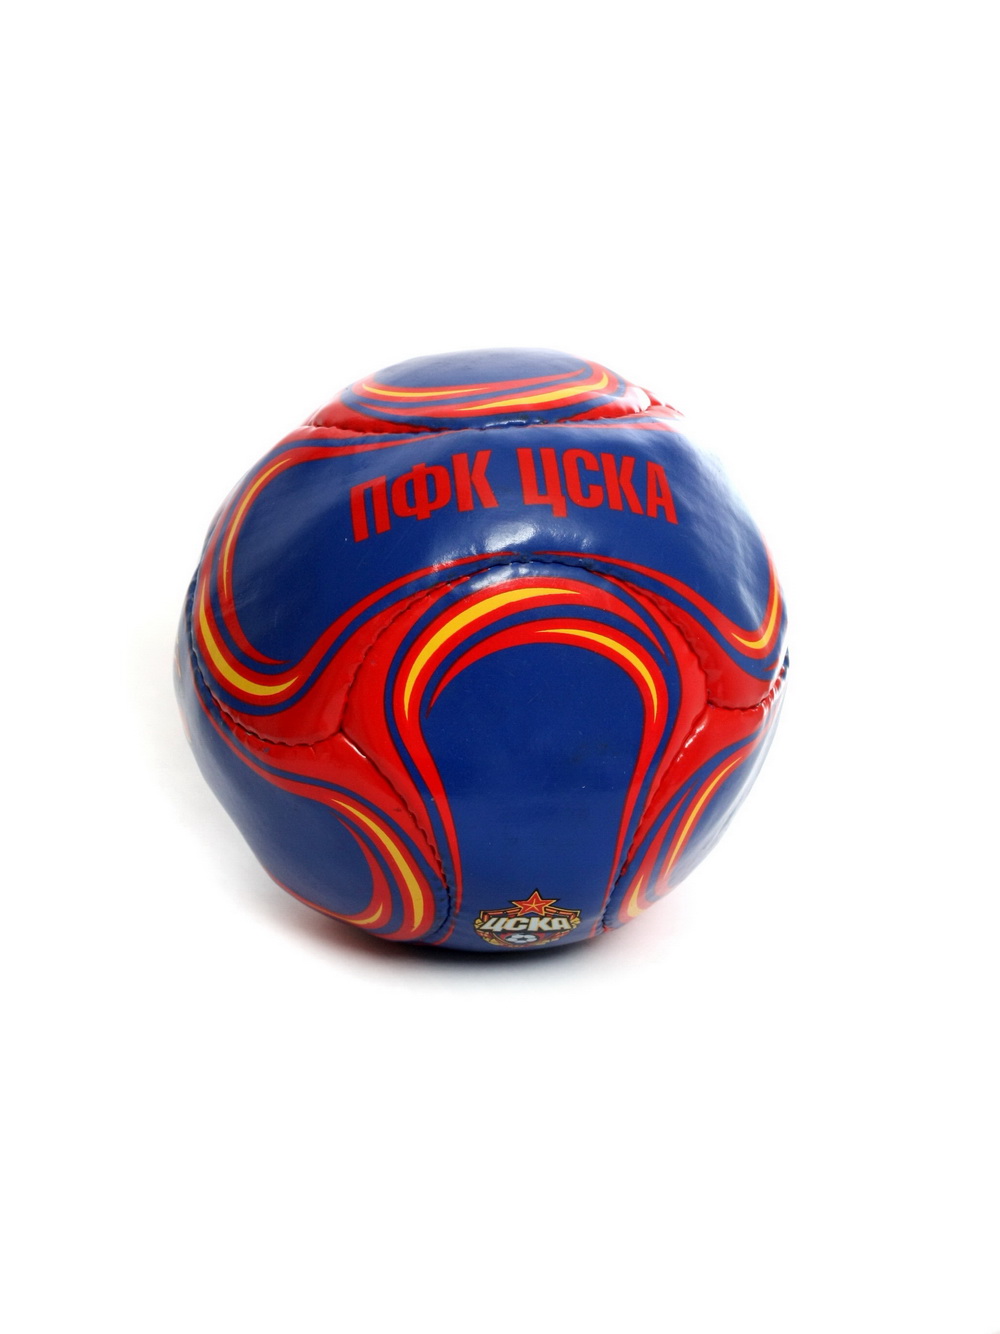 фото Мяч сувенирный красно-синий "эмблема и талисман", размер 2 пфк цска